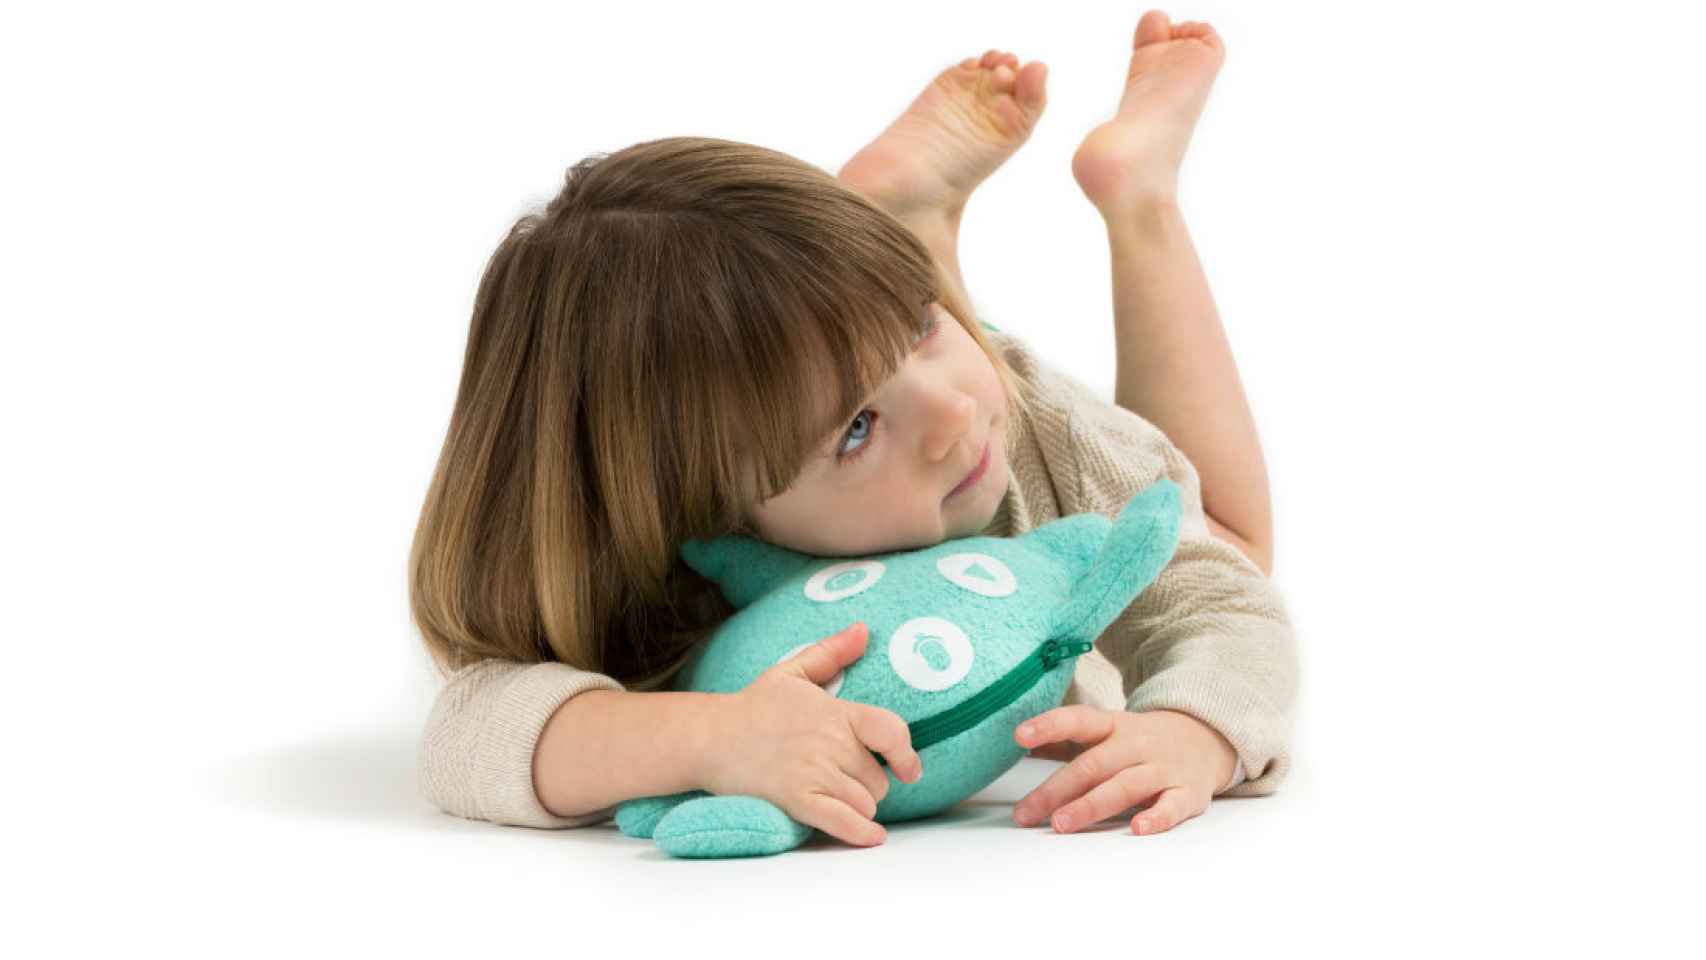 Una niña juega con uno de los muñecos. / Toymail